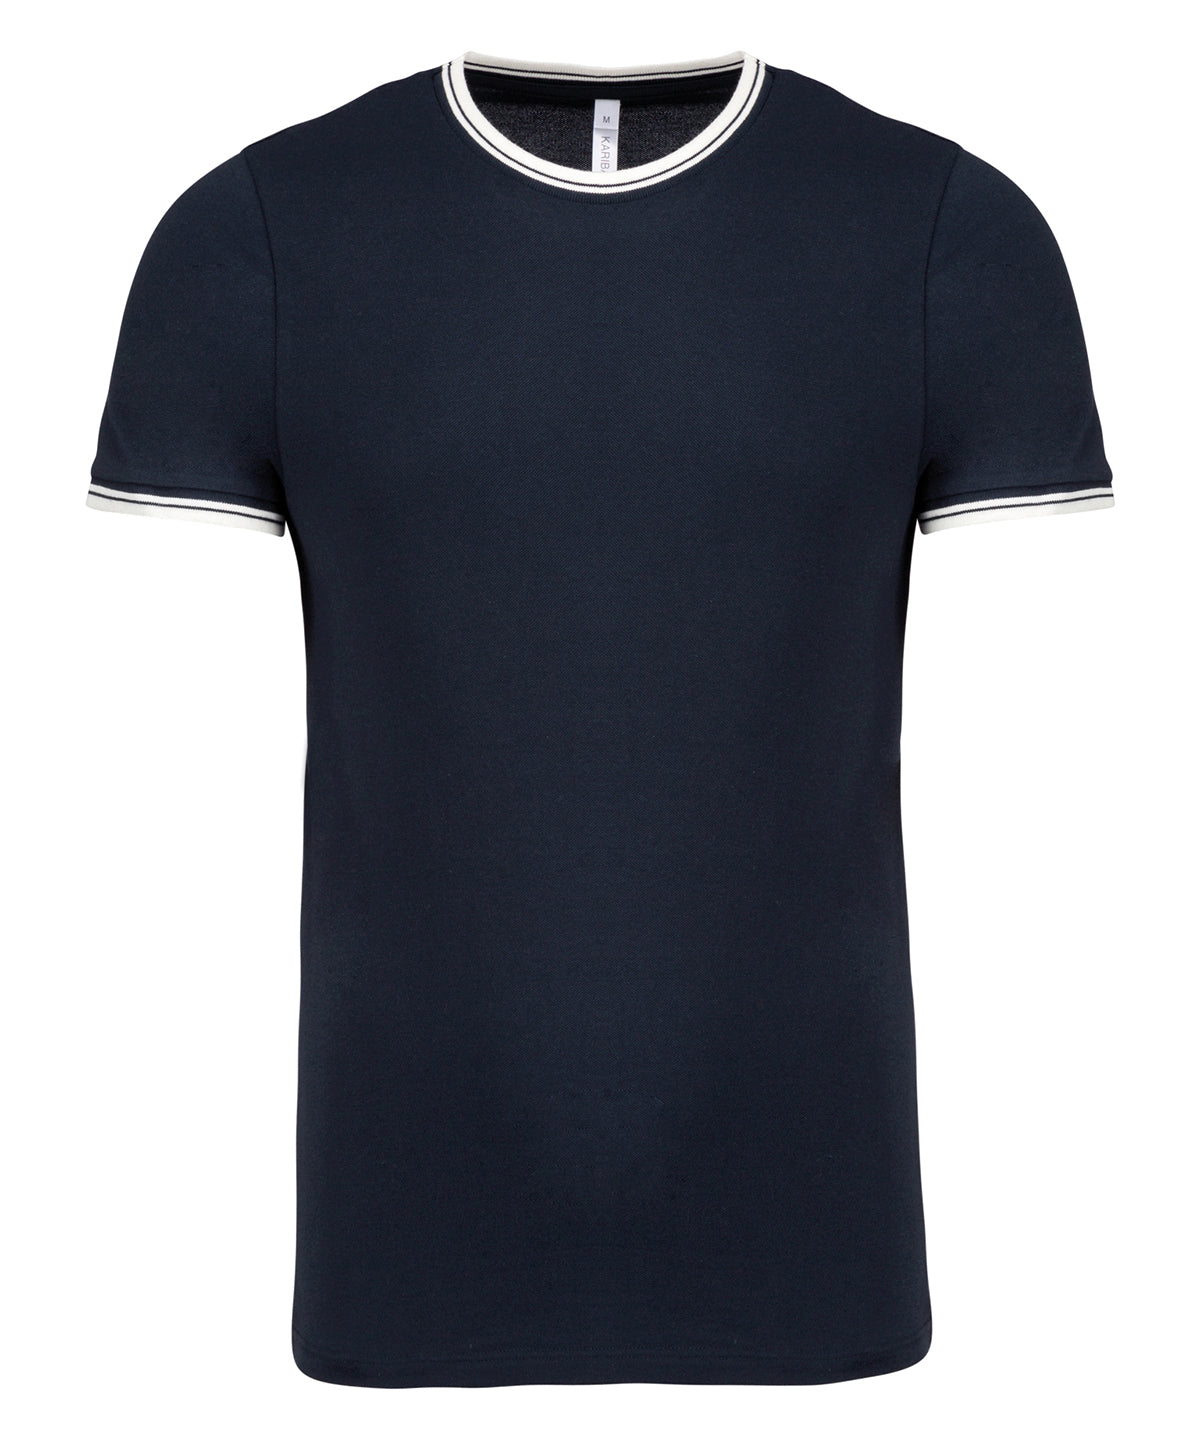 Personalised T-Shirts - Navy Kariban Men's piqué knit crew neck T-shirt